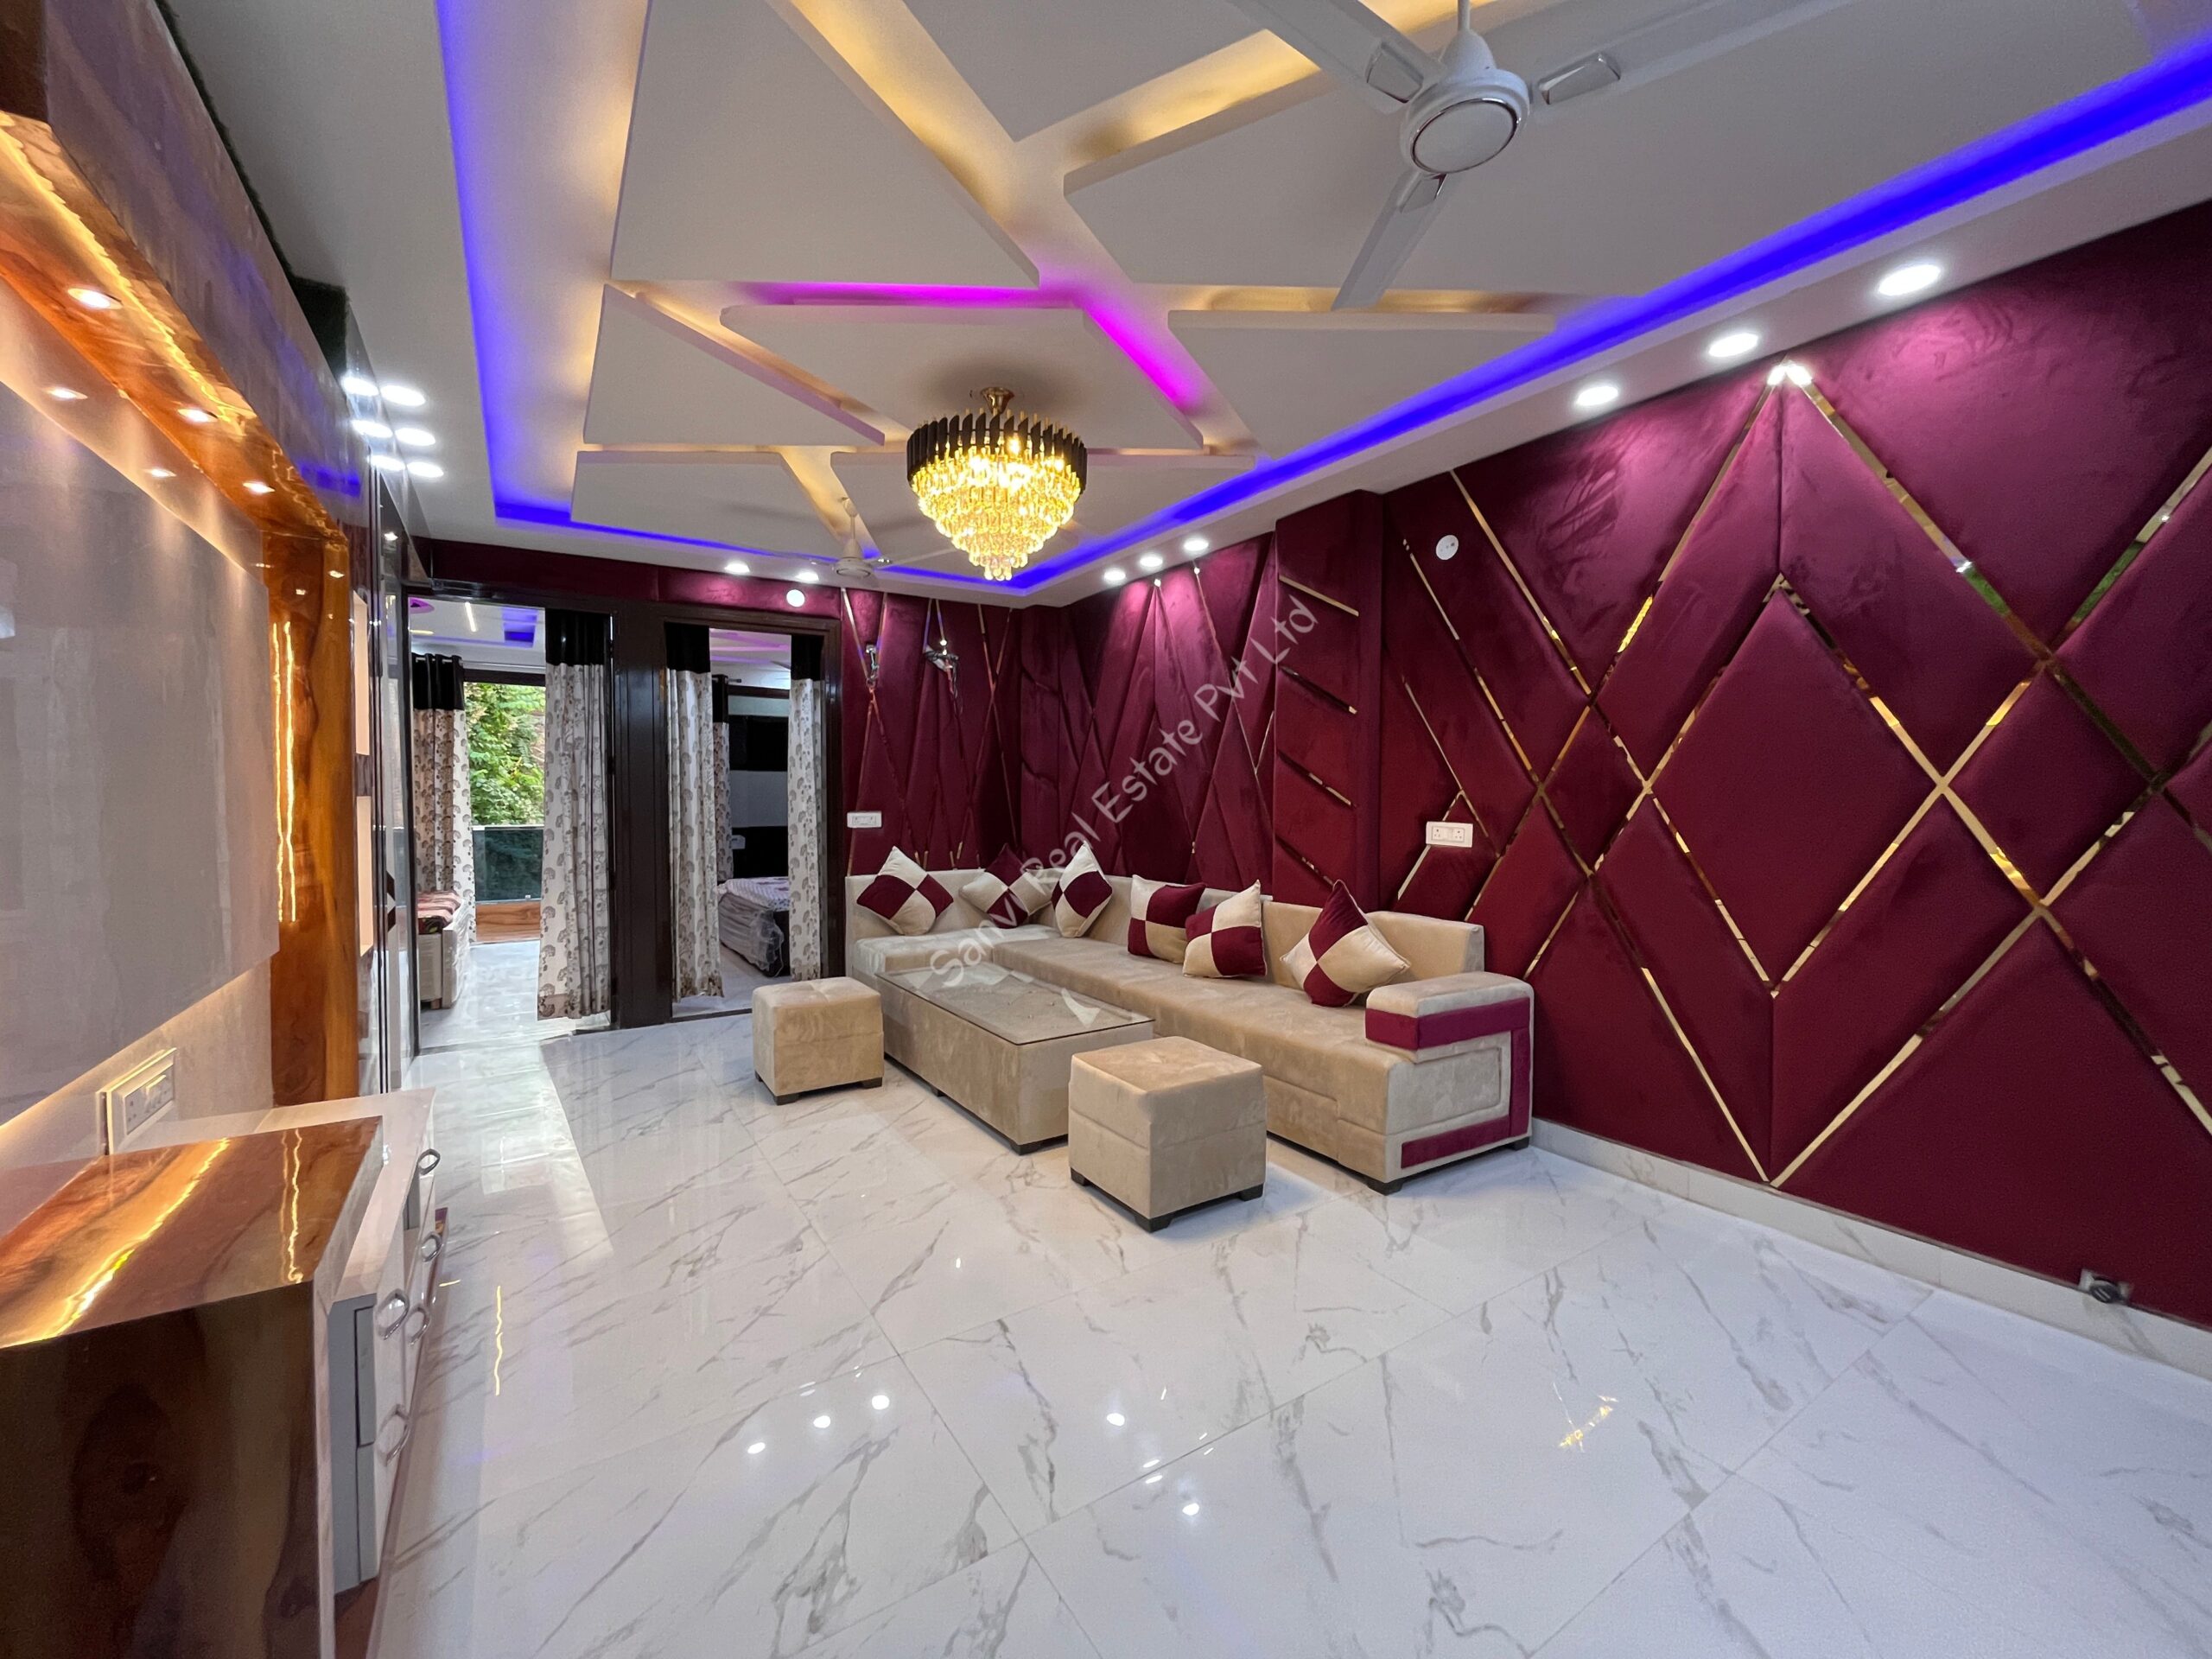 3 BHK Luxurious Fully Furnished Flat in Uttam Nagar | Property on sale in Dwarka Mor | M-Sanvi Real Estate